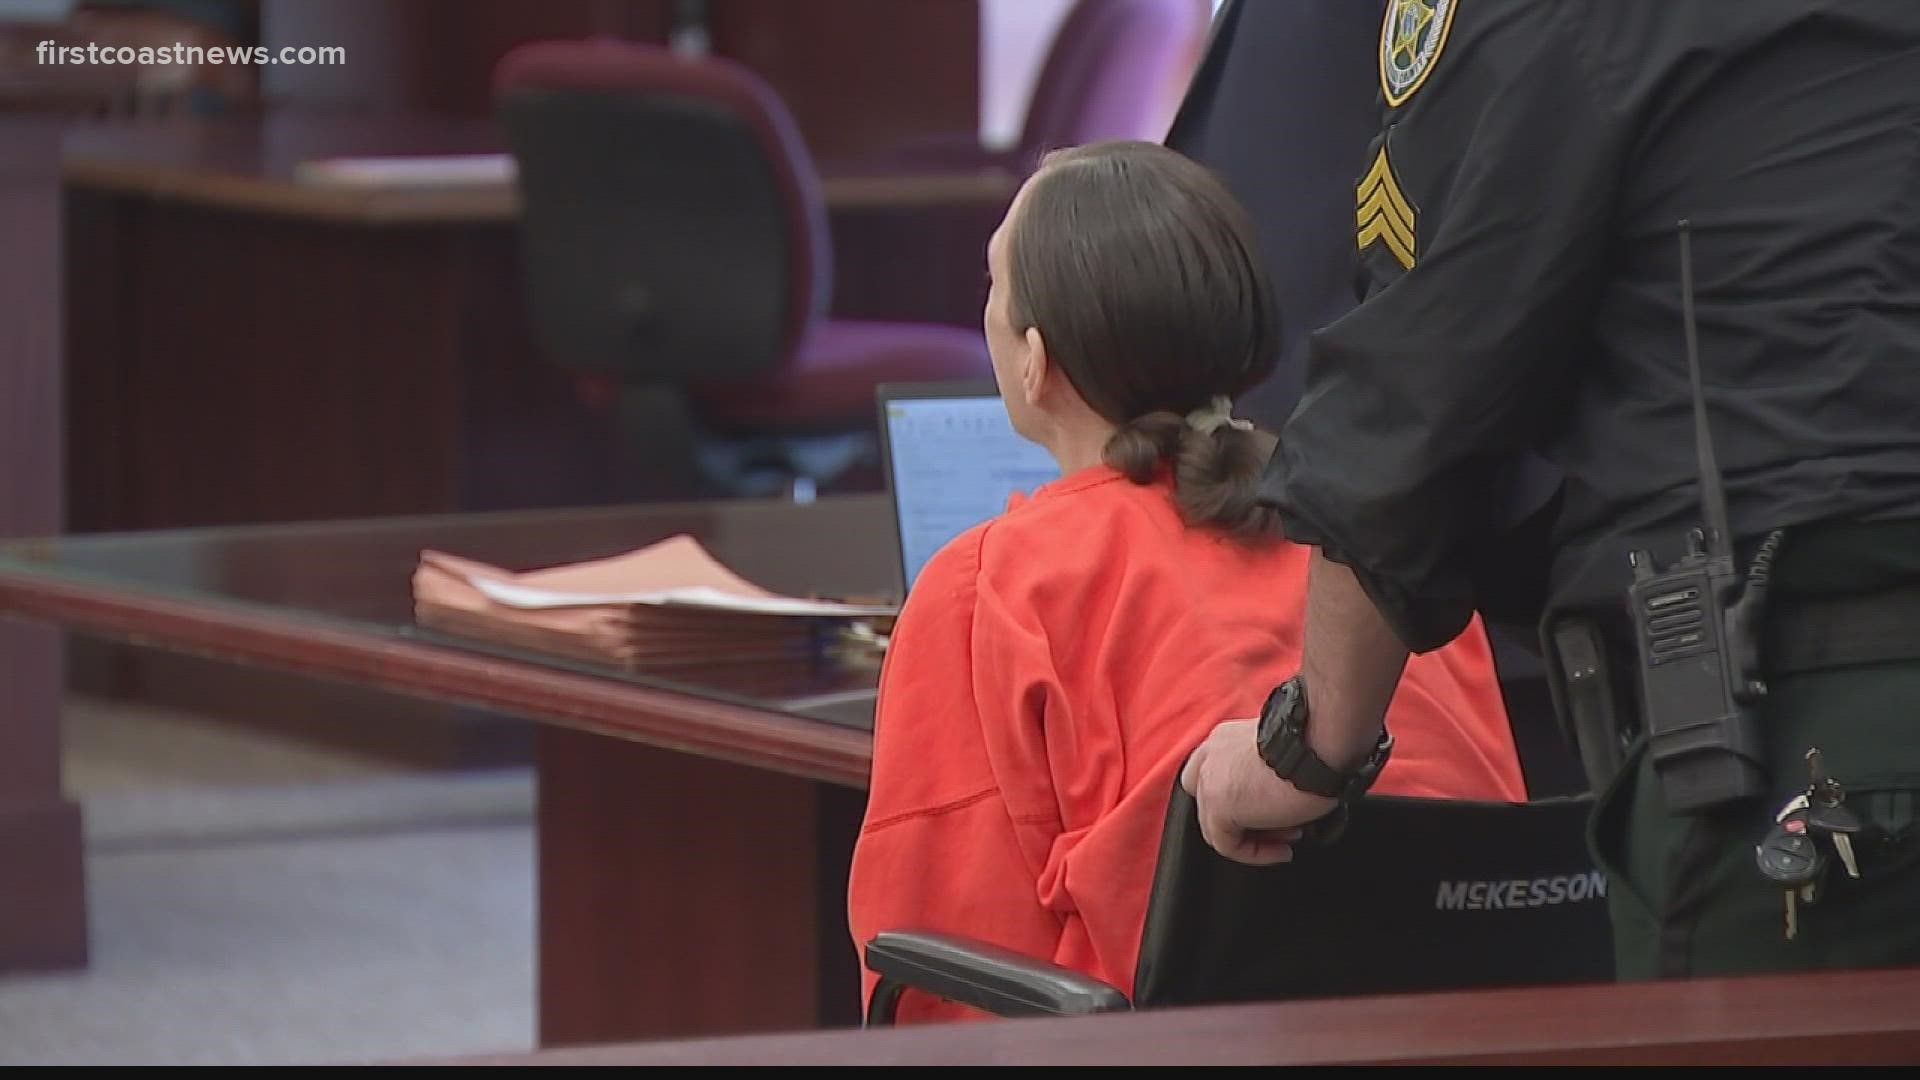 Kessler is accused of murdering Yulee hairstylist Joleen Cummings.